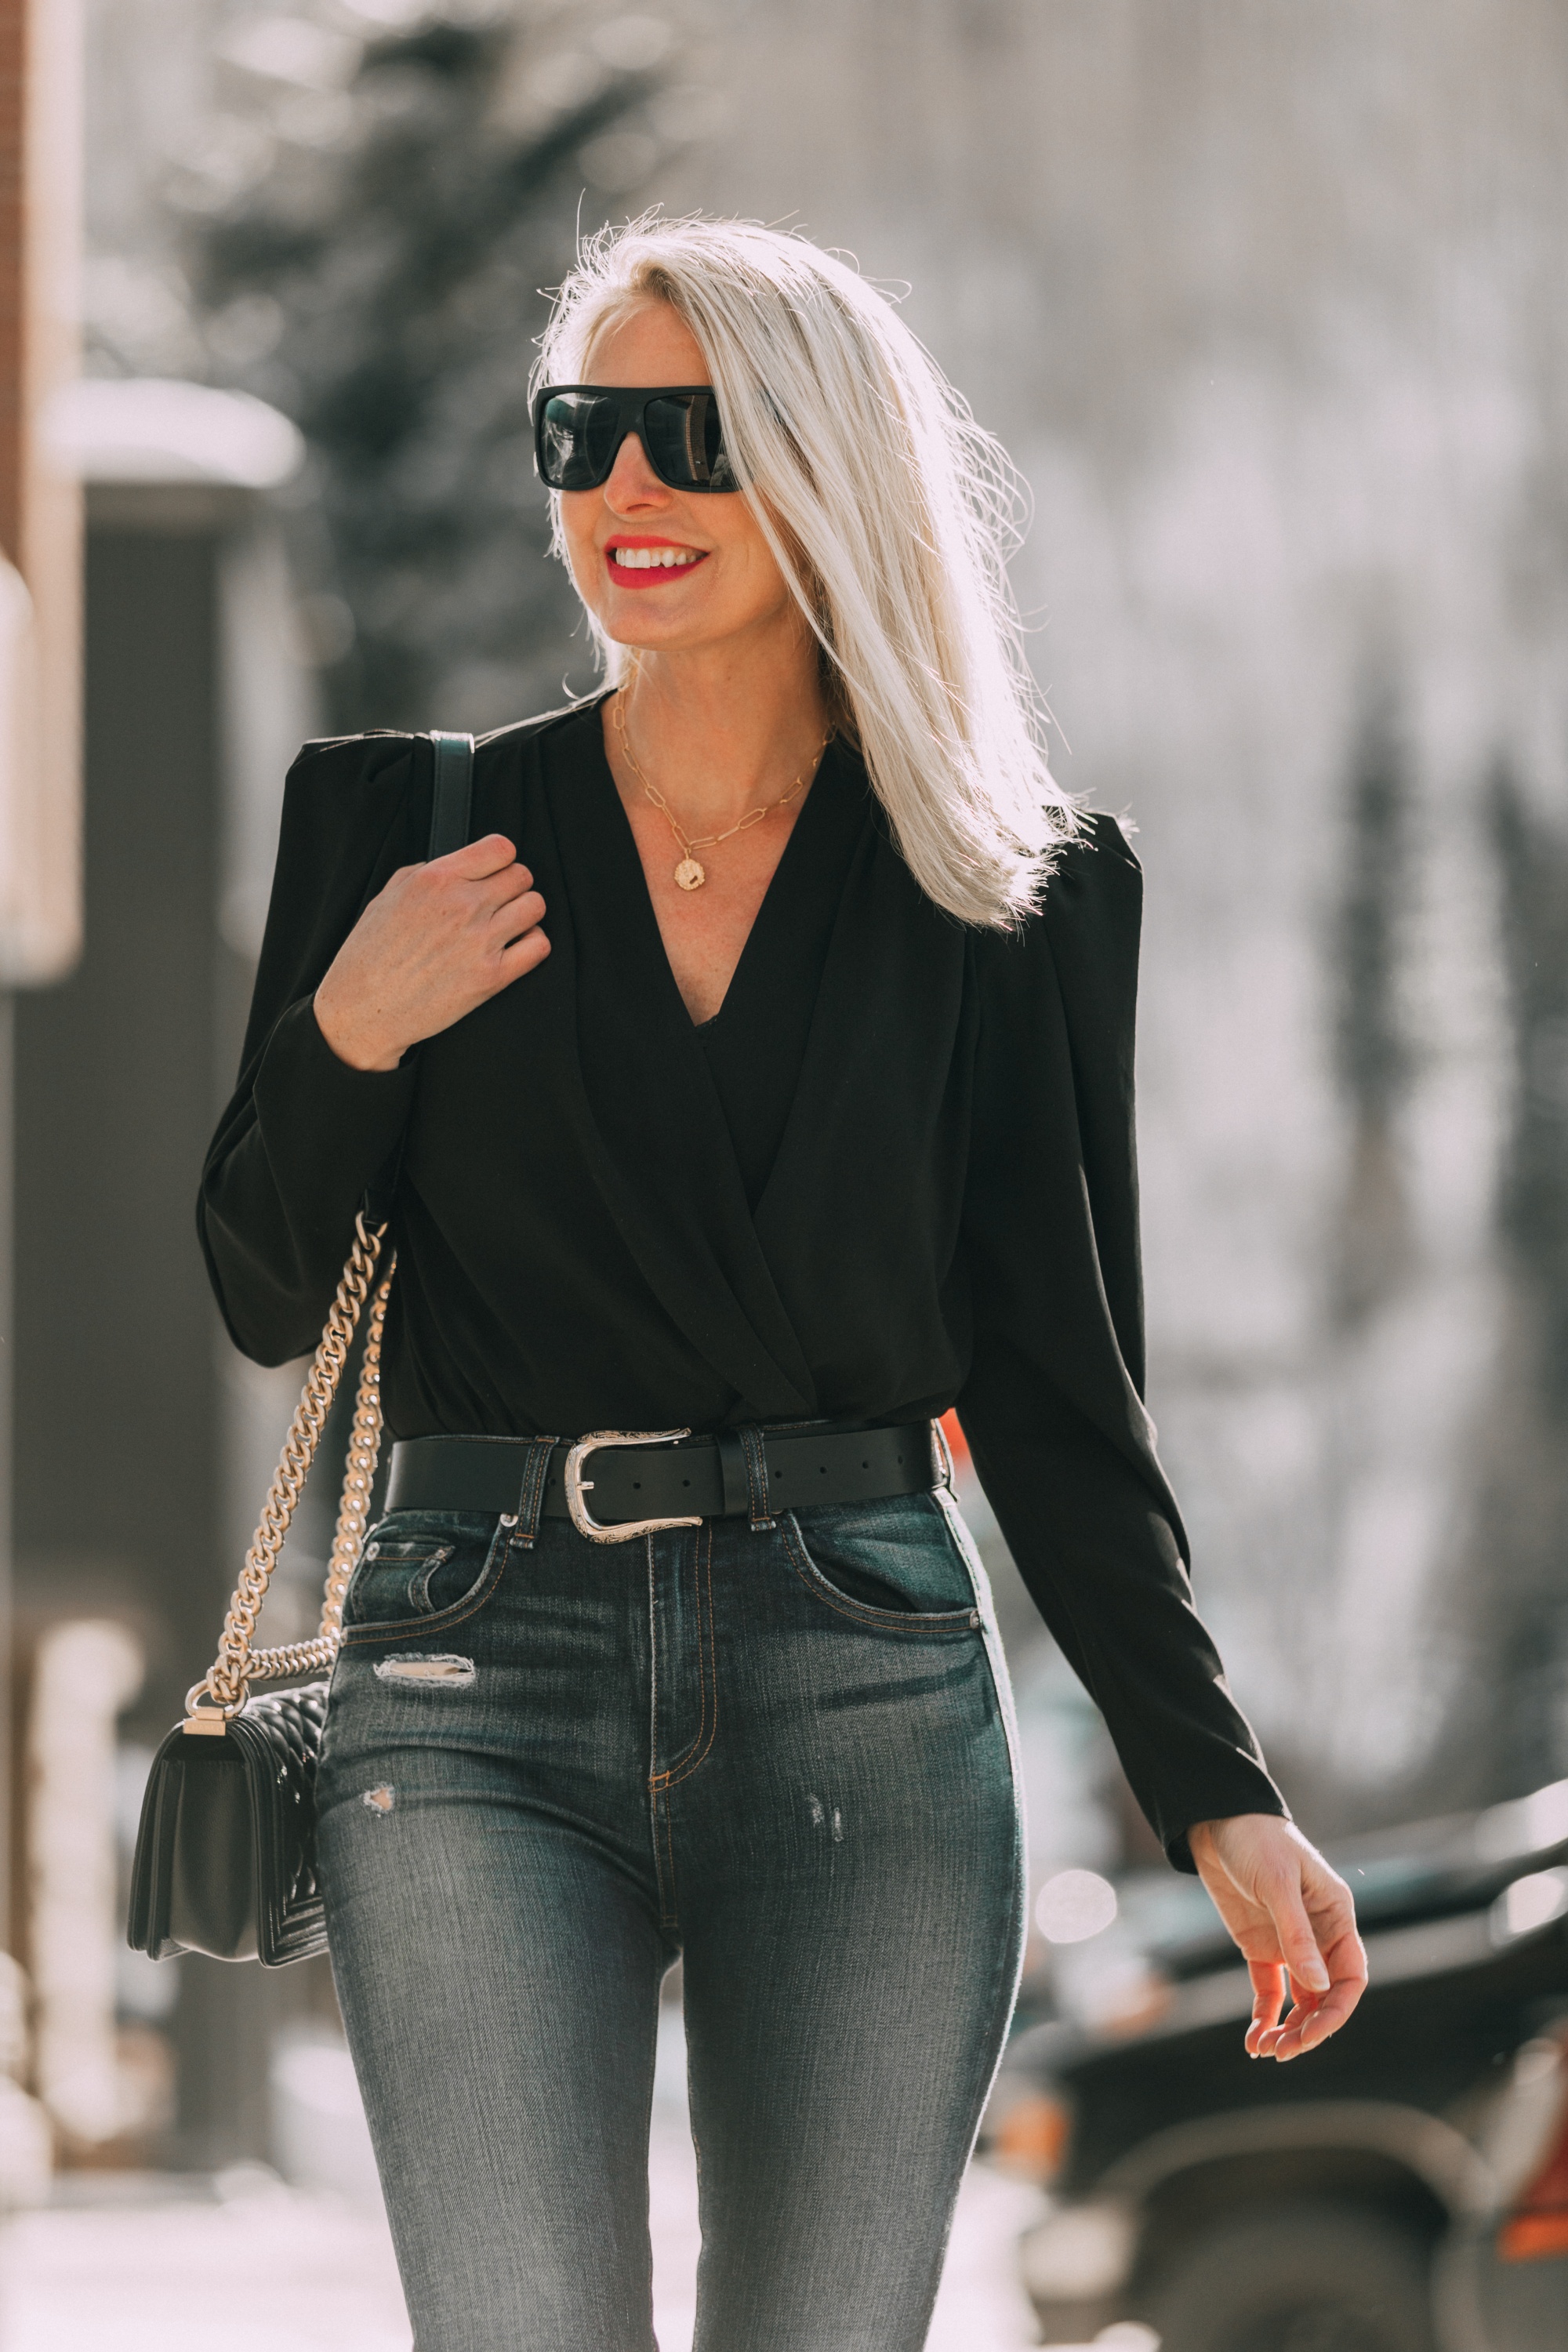 Date Night Outfits, Modebloggerin Erin Busbee von BusbeeStyle.com trägt eine schwarze Bluse mit Puffärmeln von IRO, zerrissene Röhrenjeans von Rag & Bone, schwarze kniehohe Stiefel mit Krokoprägung von Schutz, eine Chanel-Boy-Tasche und einen Topshop-Gürtel in Telluride, Colorado